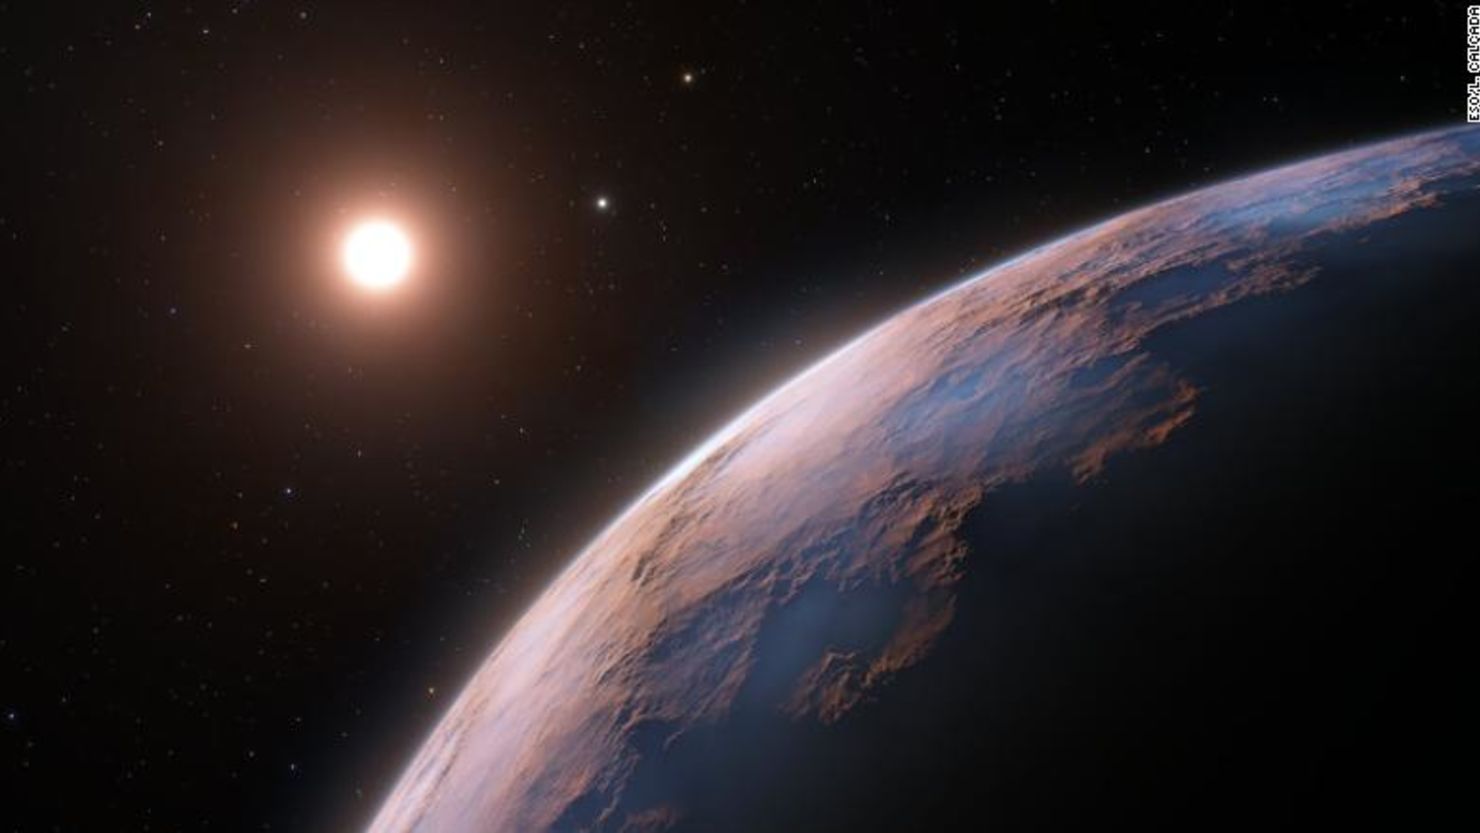 La representación de un artista muestra una vista detallada de Proxima d, un candidato a planeta encontrado recientemente en órbita alrededor de la estrella enana roja Proxima Centauri, la estrella más cercana a nuestro sol.